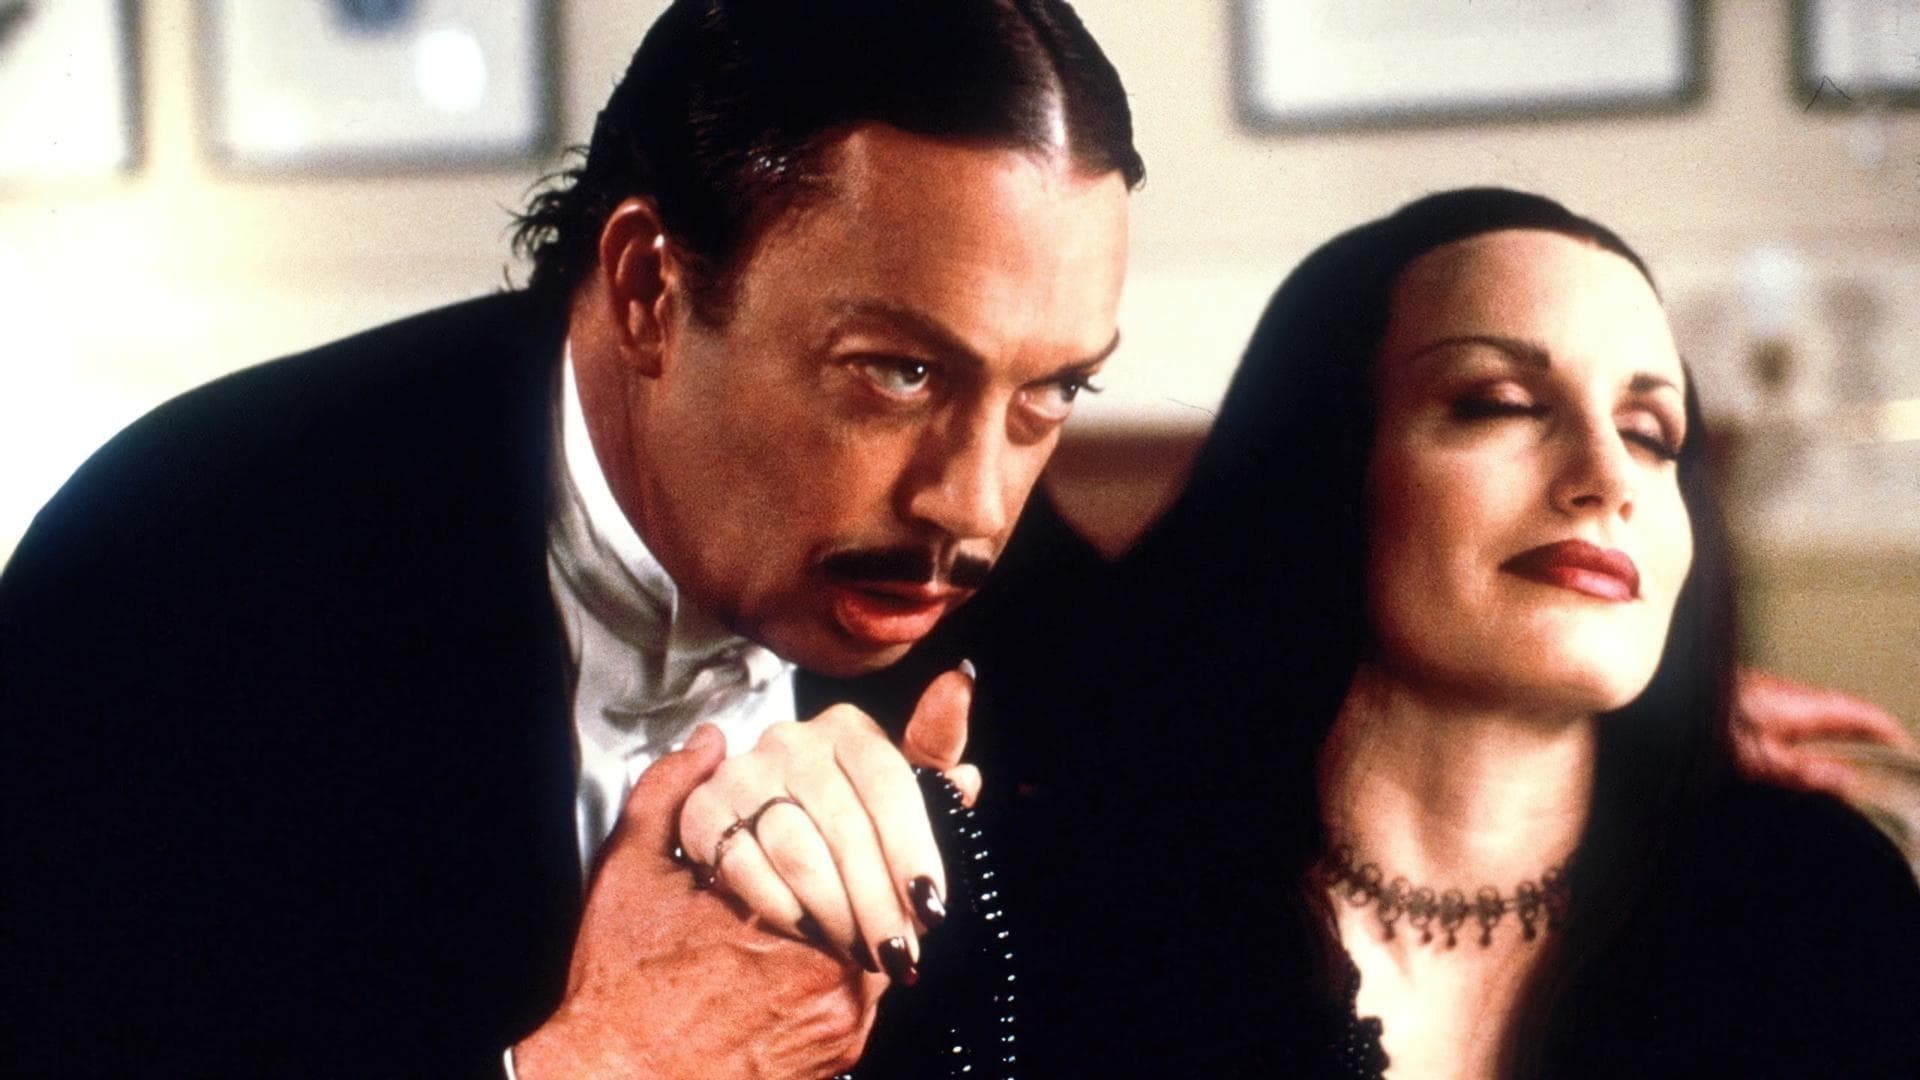 Addams Family – Und die lieben Verwandten (1998)